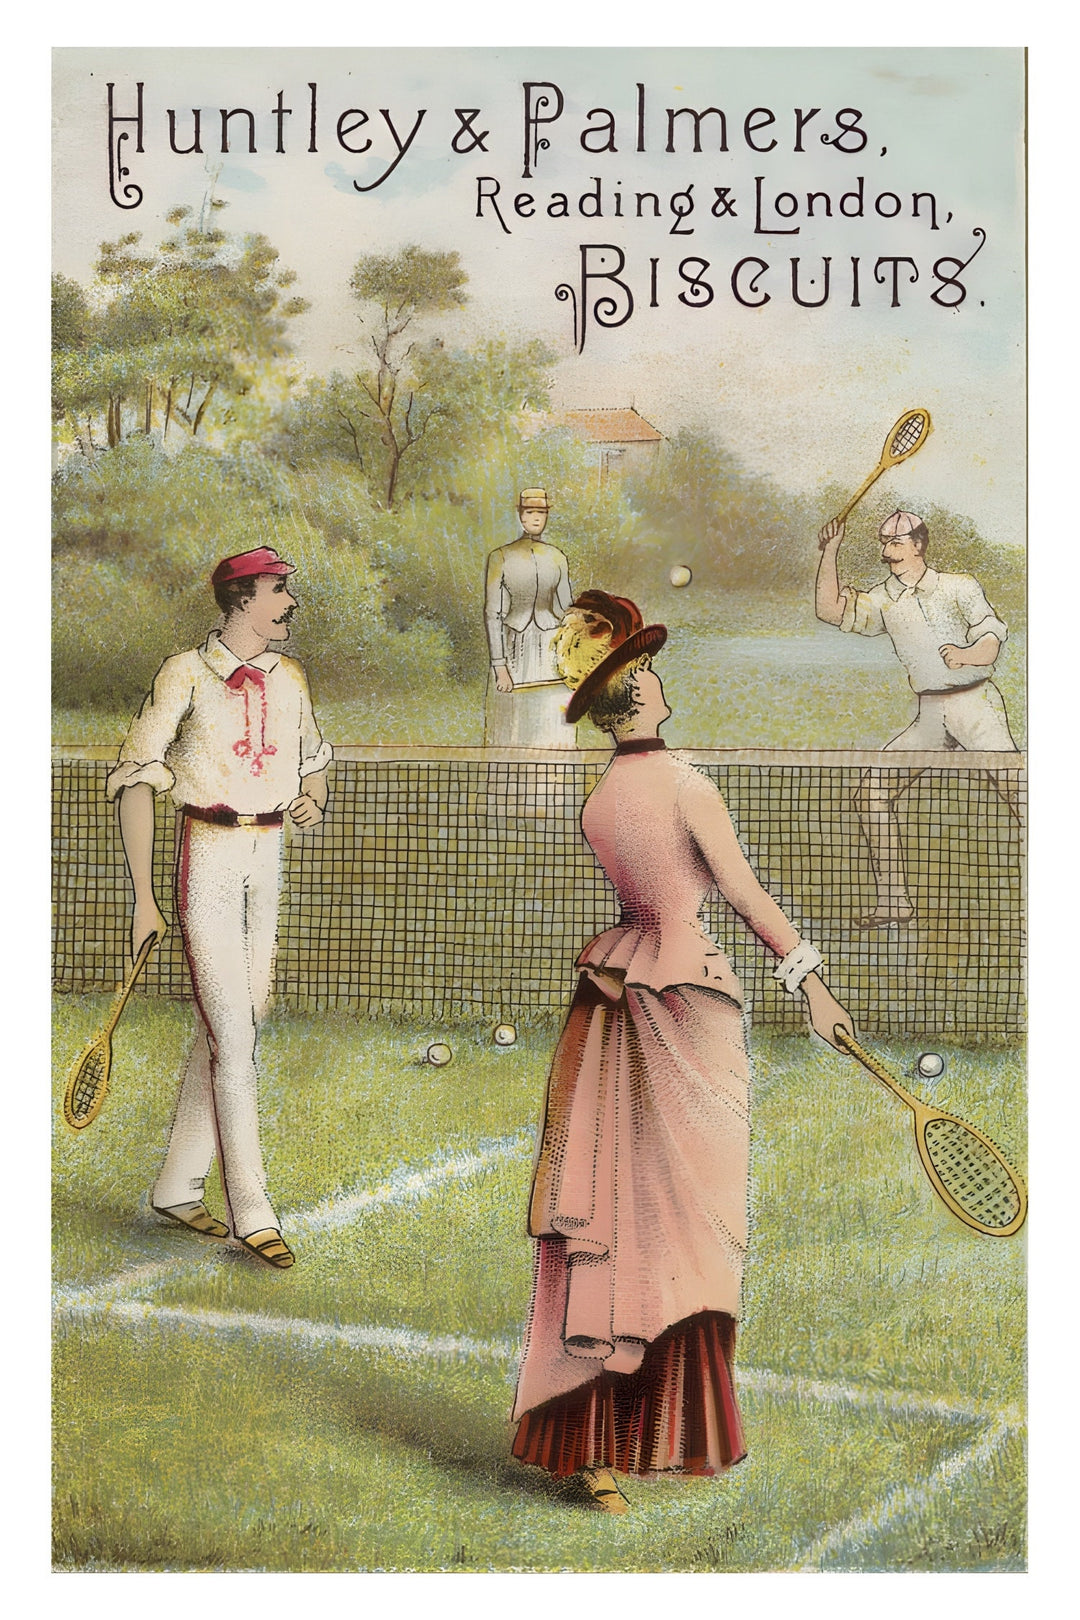 Affiche publicité rétro -  tennis - vintage - pub retro